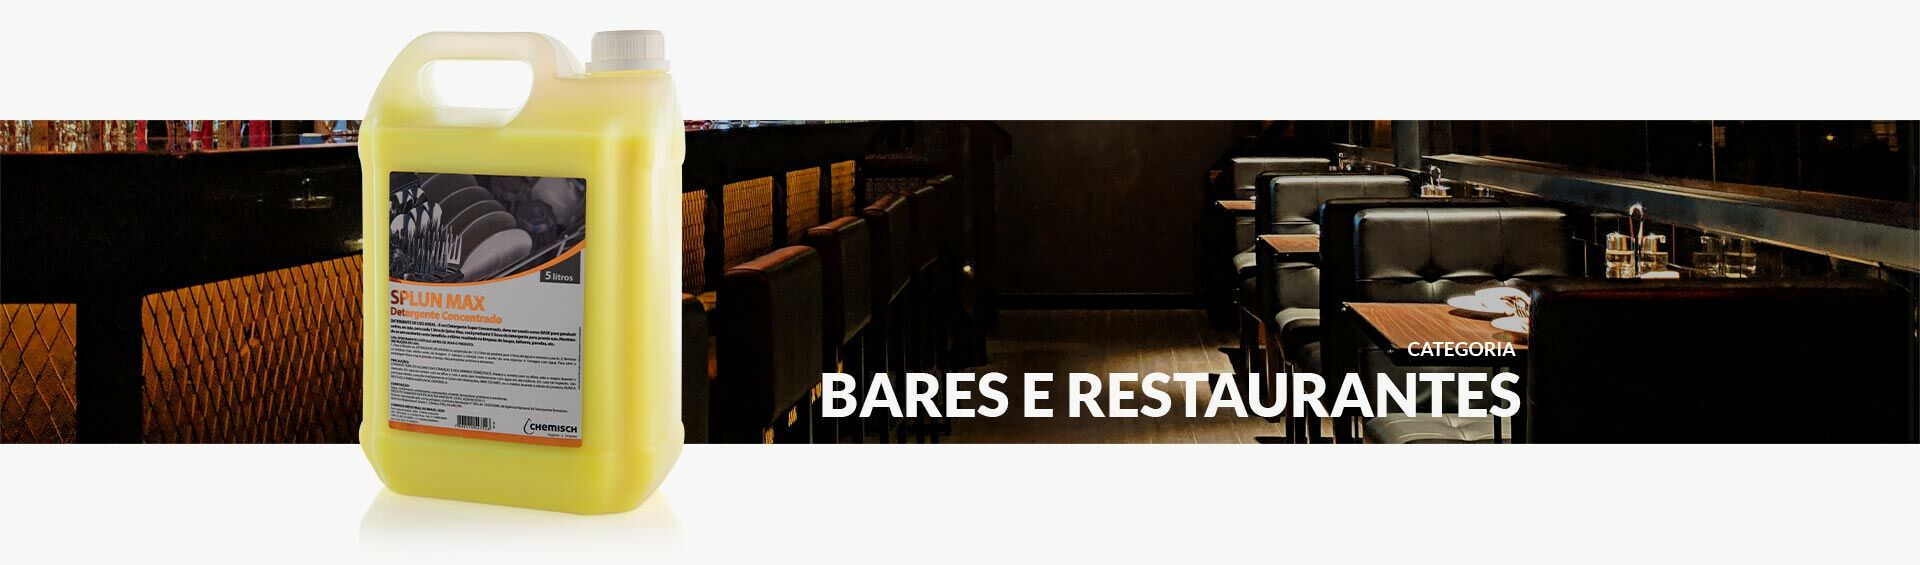 Banner de Bares e Restaurantes